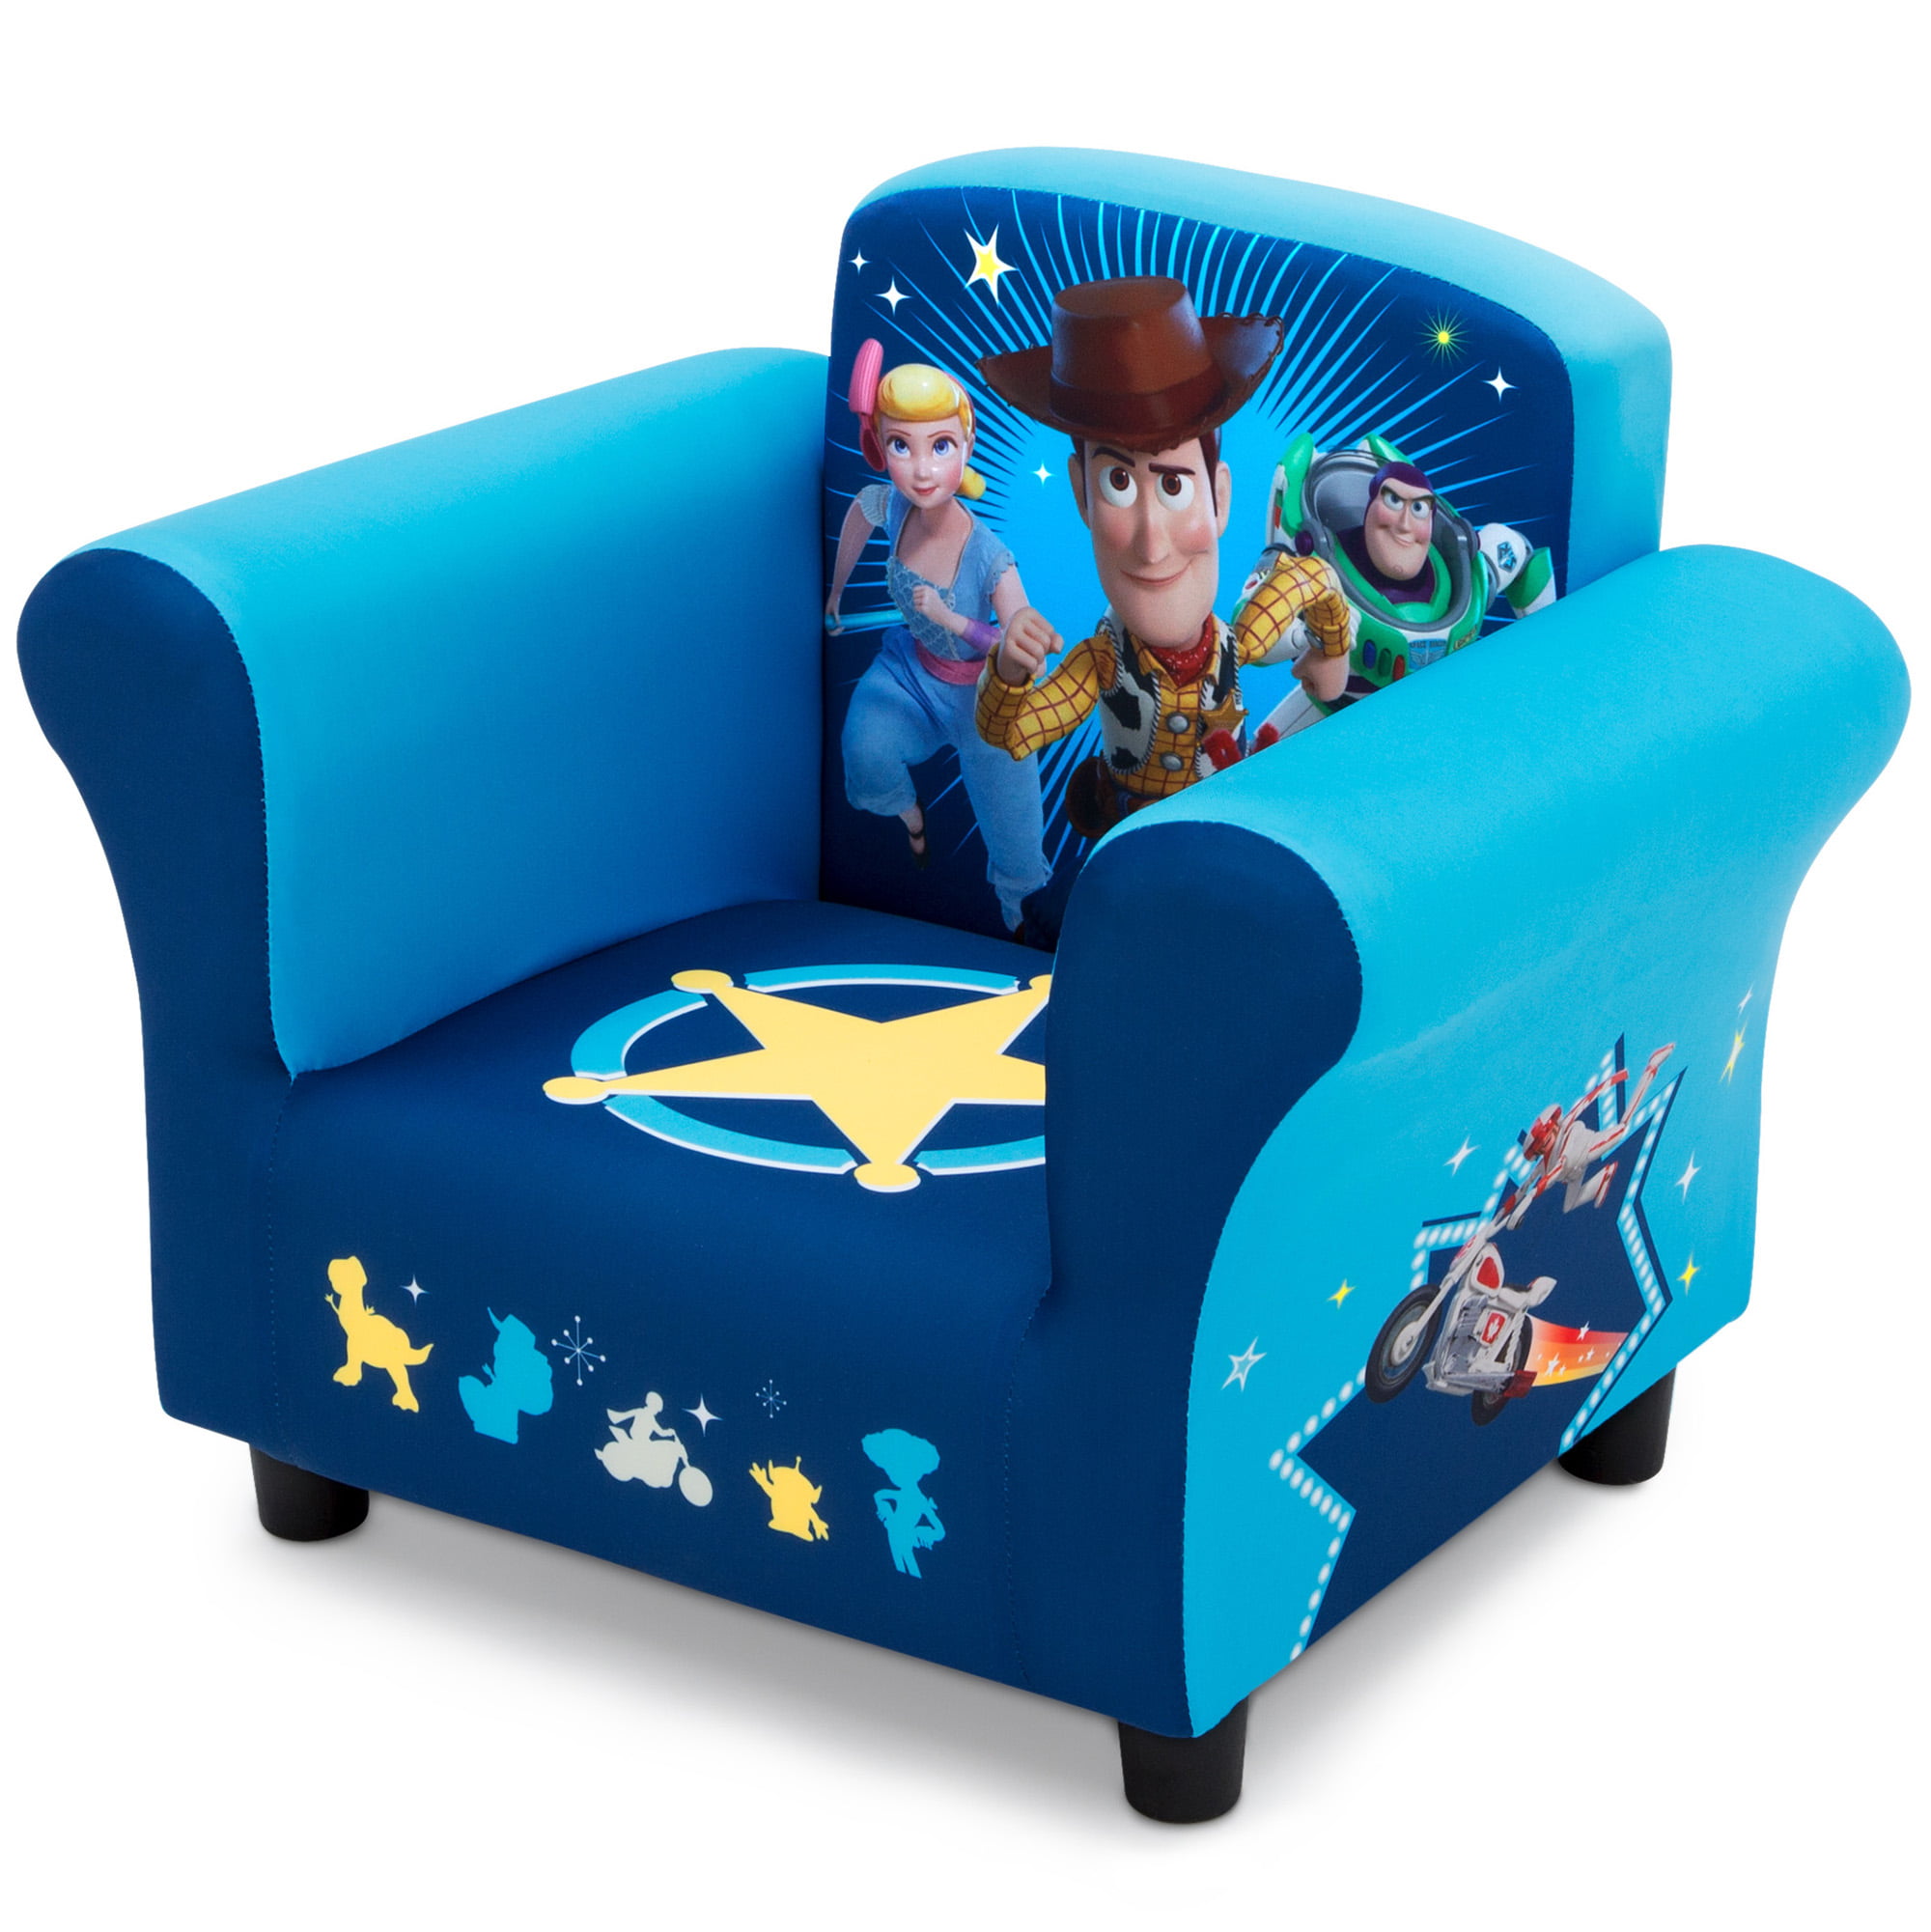 Disney Pixar Toy Story 4 Upholstered Chair Delta Children Kid Gift 